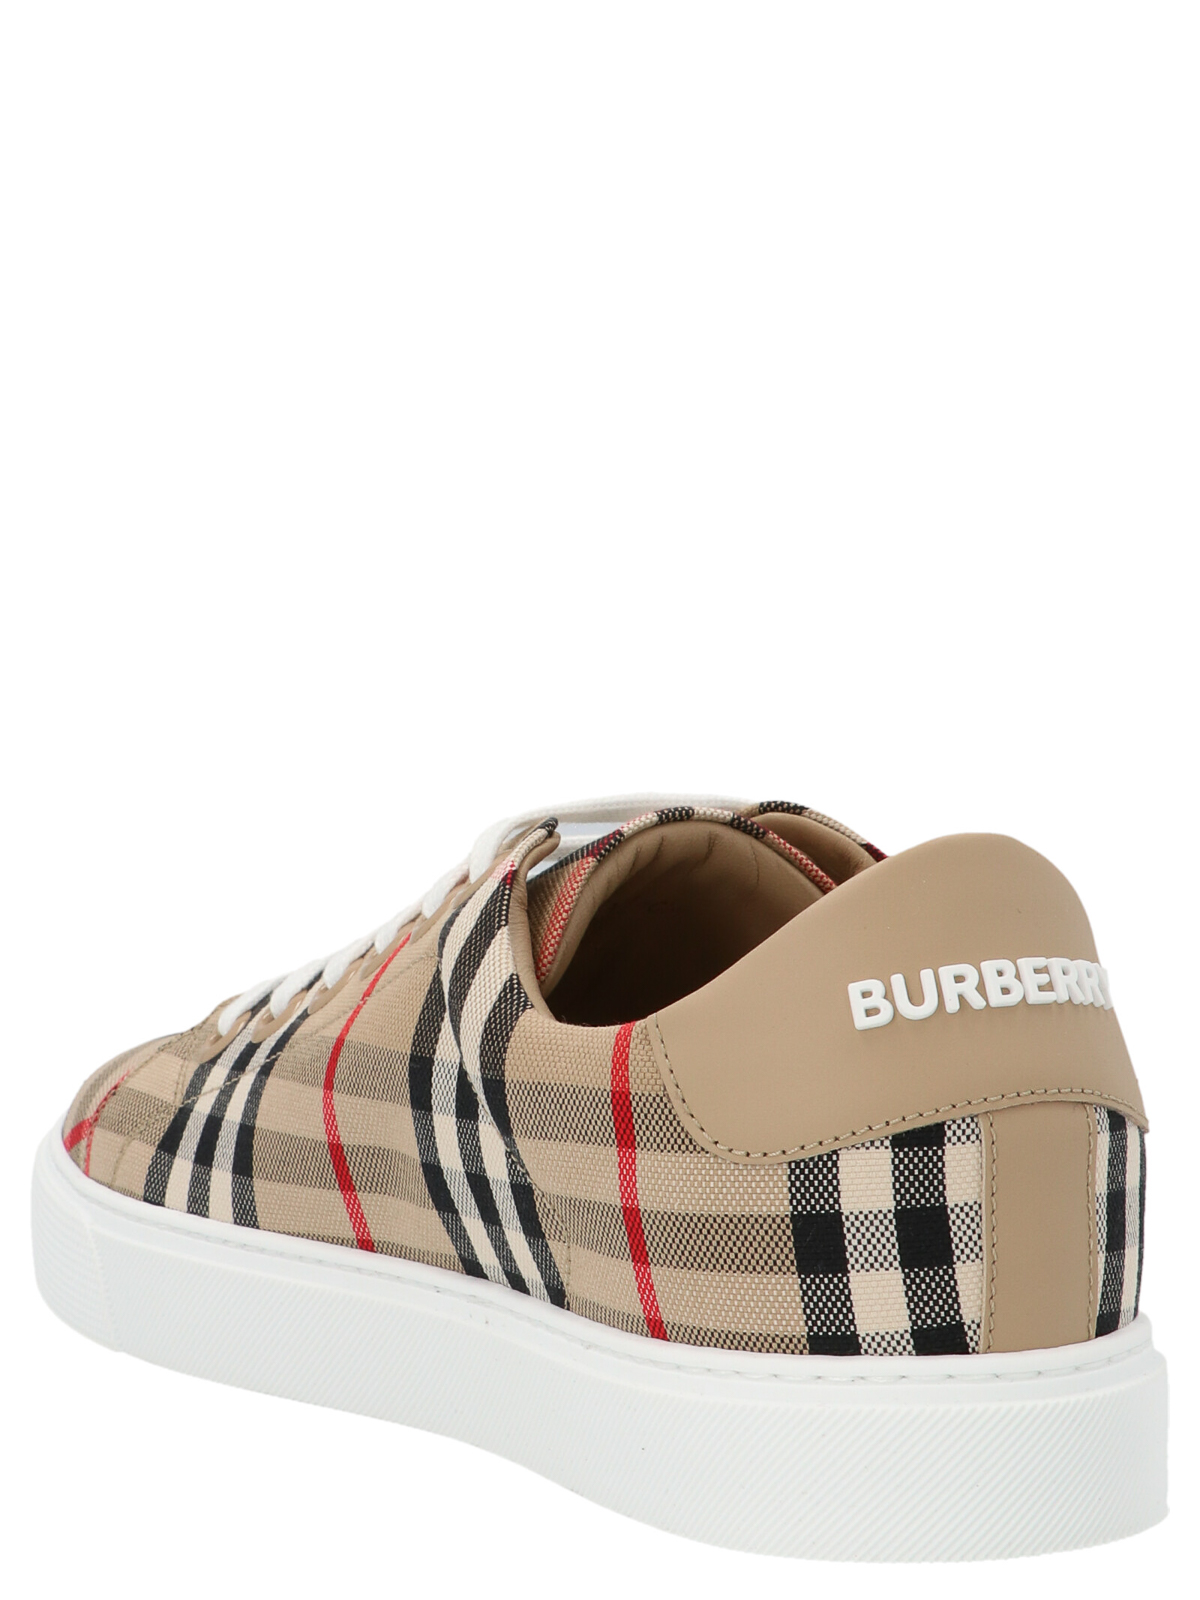 Shop Burberry Newalbridge Sneakers In Beige